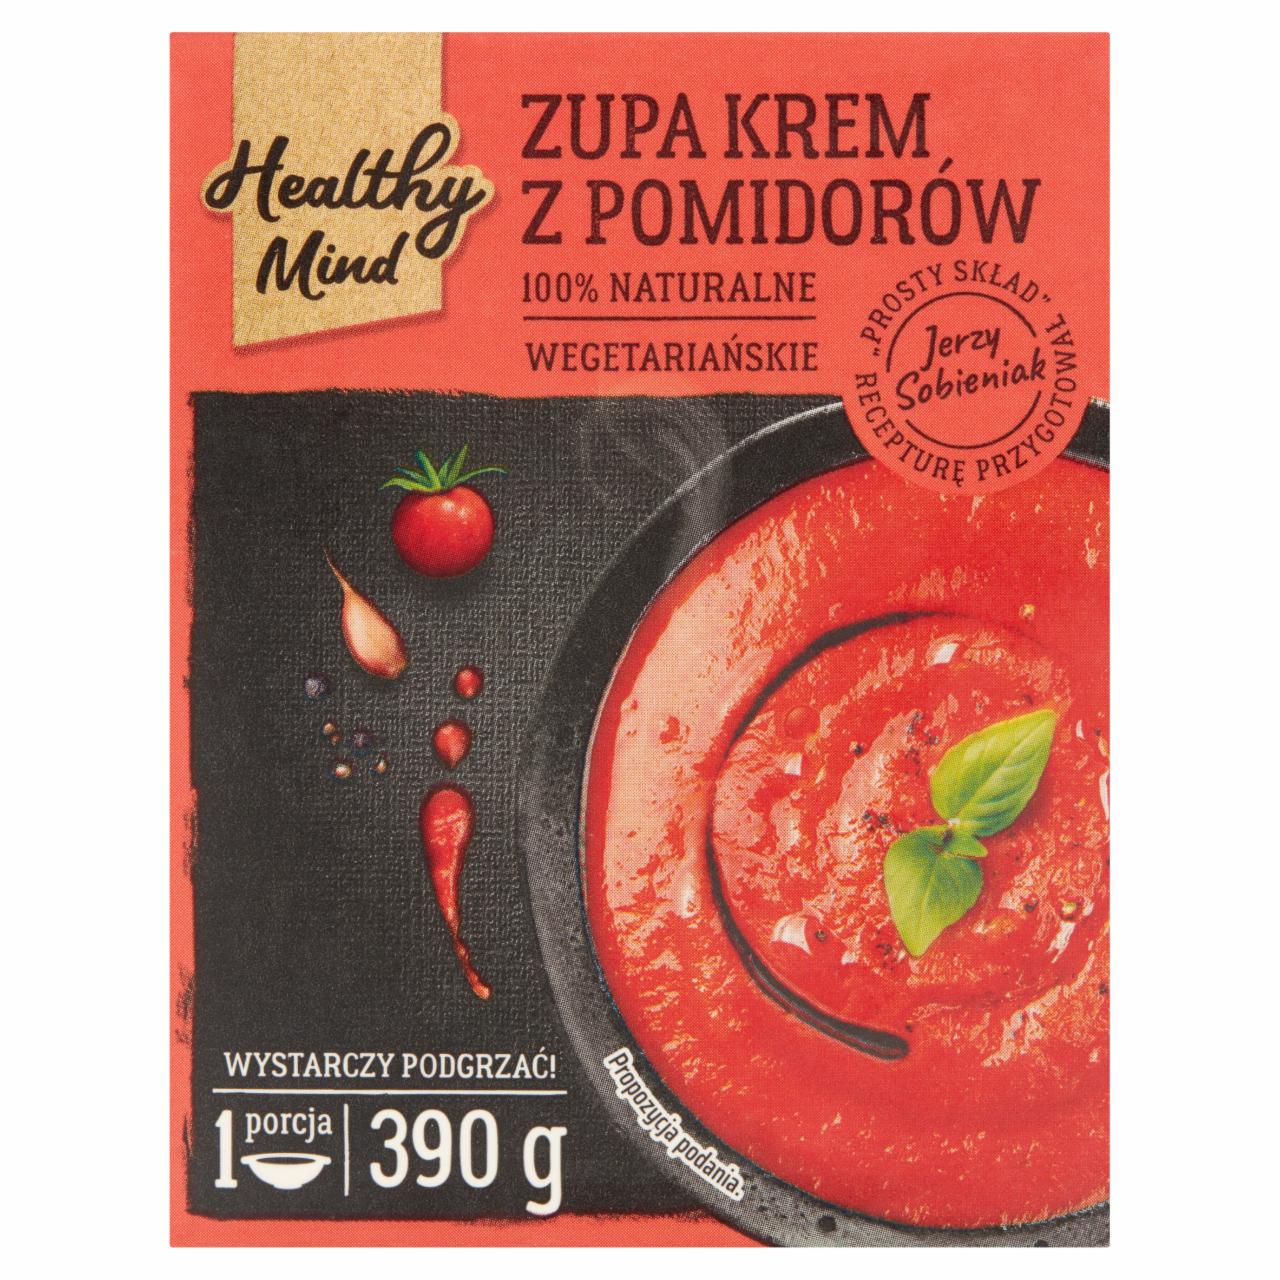 Zdjęcia - Healthy Mind Zupa krem z pomidorów 390 g